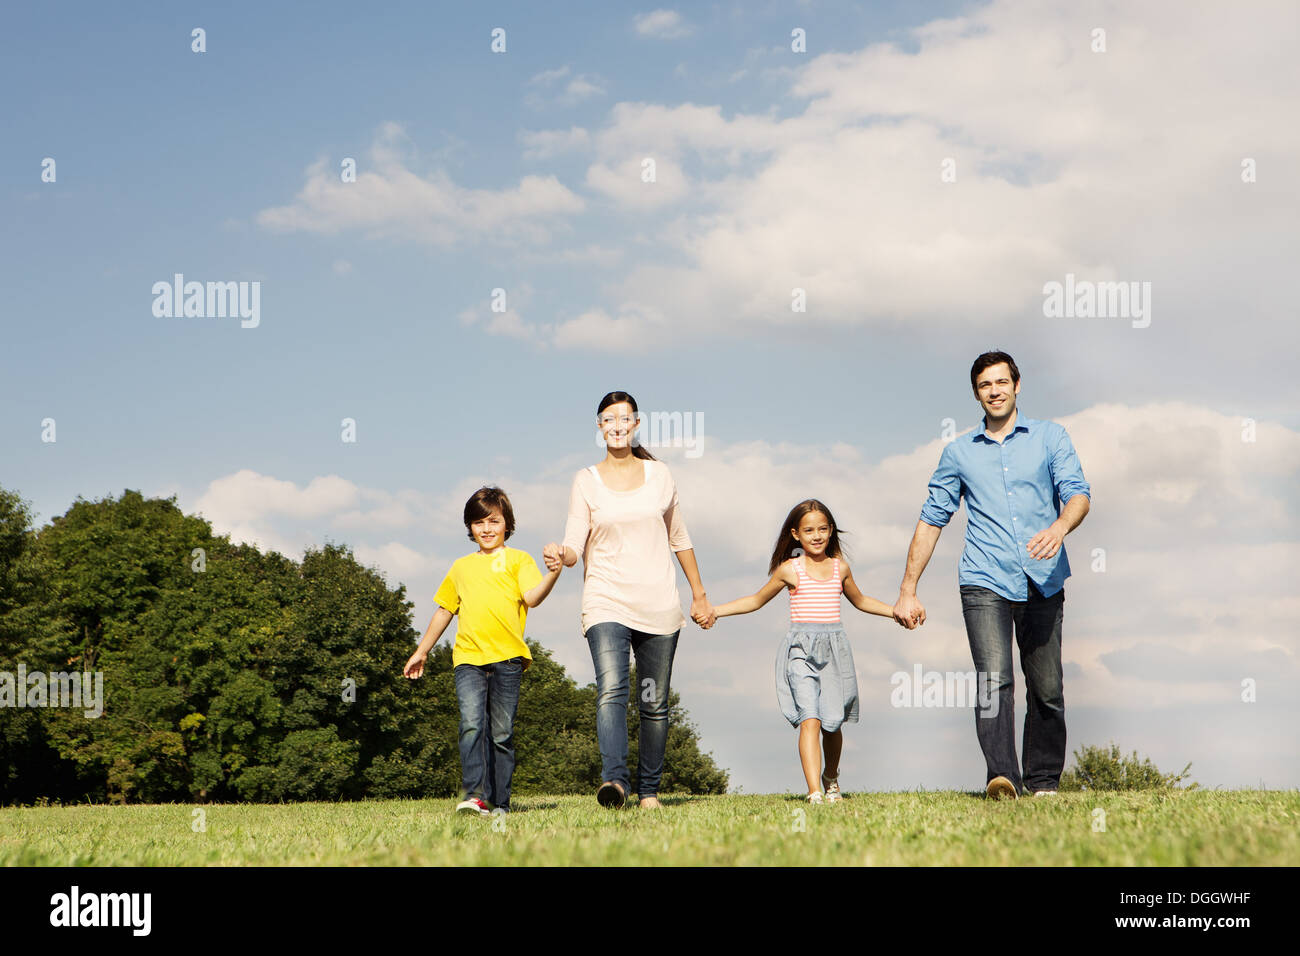 Famille avec deux enfants se tenant la main, randonnée pédestre Banque D'Images